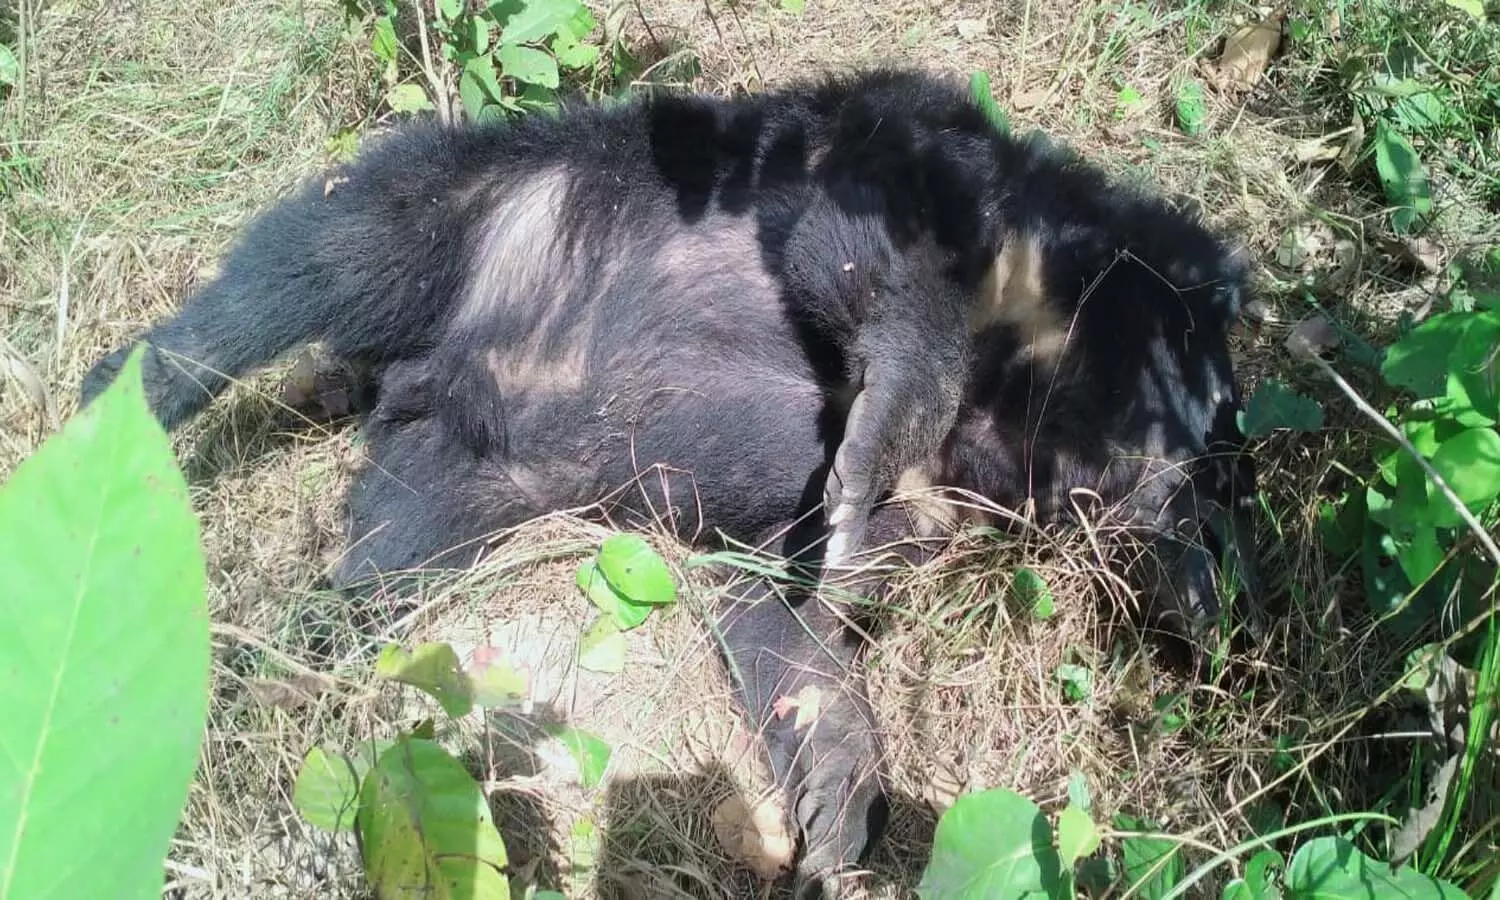 Bears body found under suspicious circumstances in Valmiki Nagar Tiger Project forest